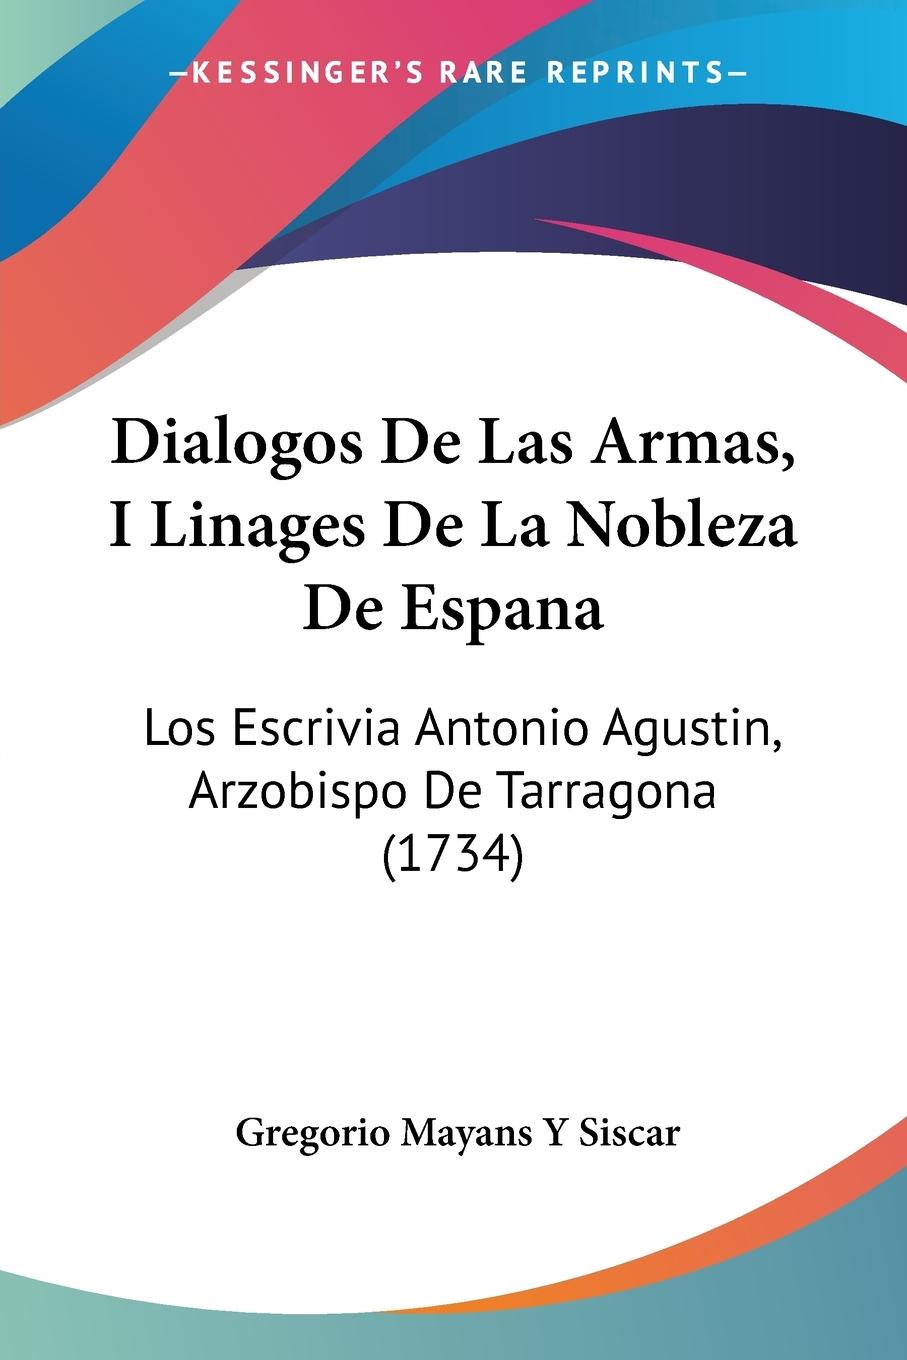 Dialogos De Las Armas, I Linages De La Nobleza De Espana - Siscar, Gregorio Mayans Y